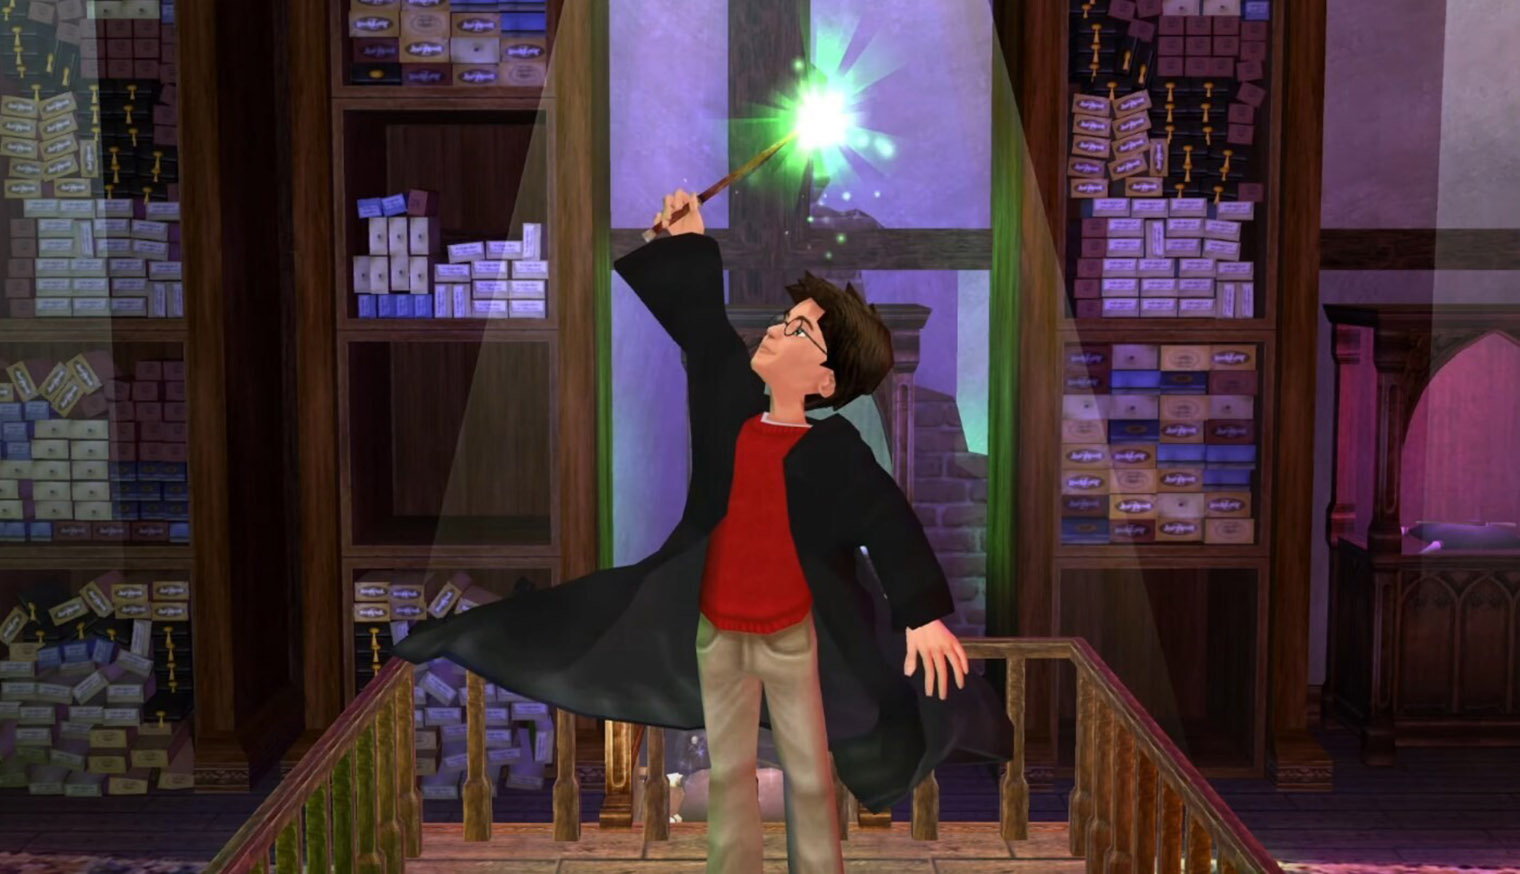 Гарри получает свою волшебную палочку в магазине Олливандера. Кадр: Electronic Arts